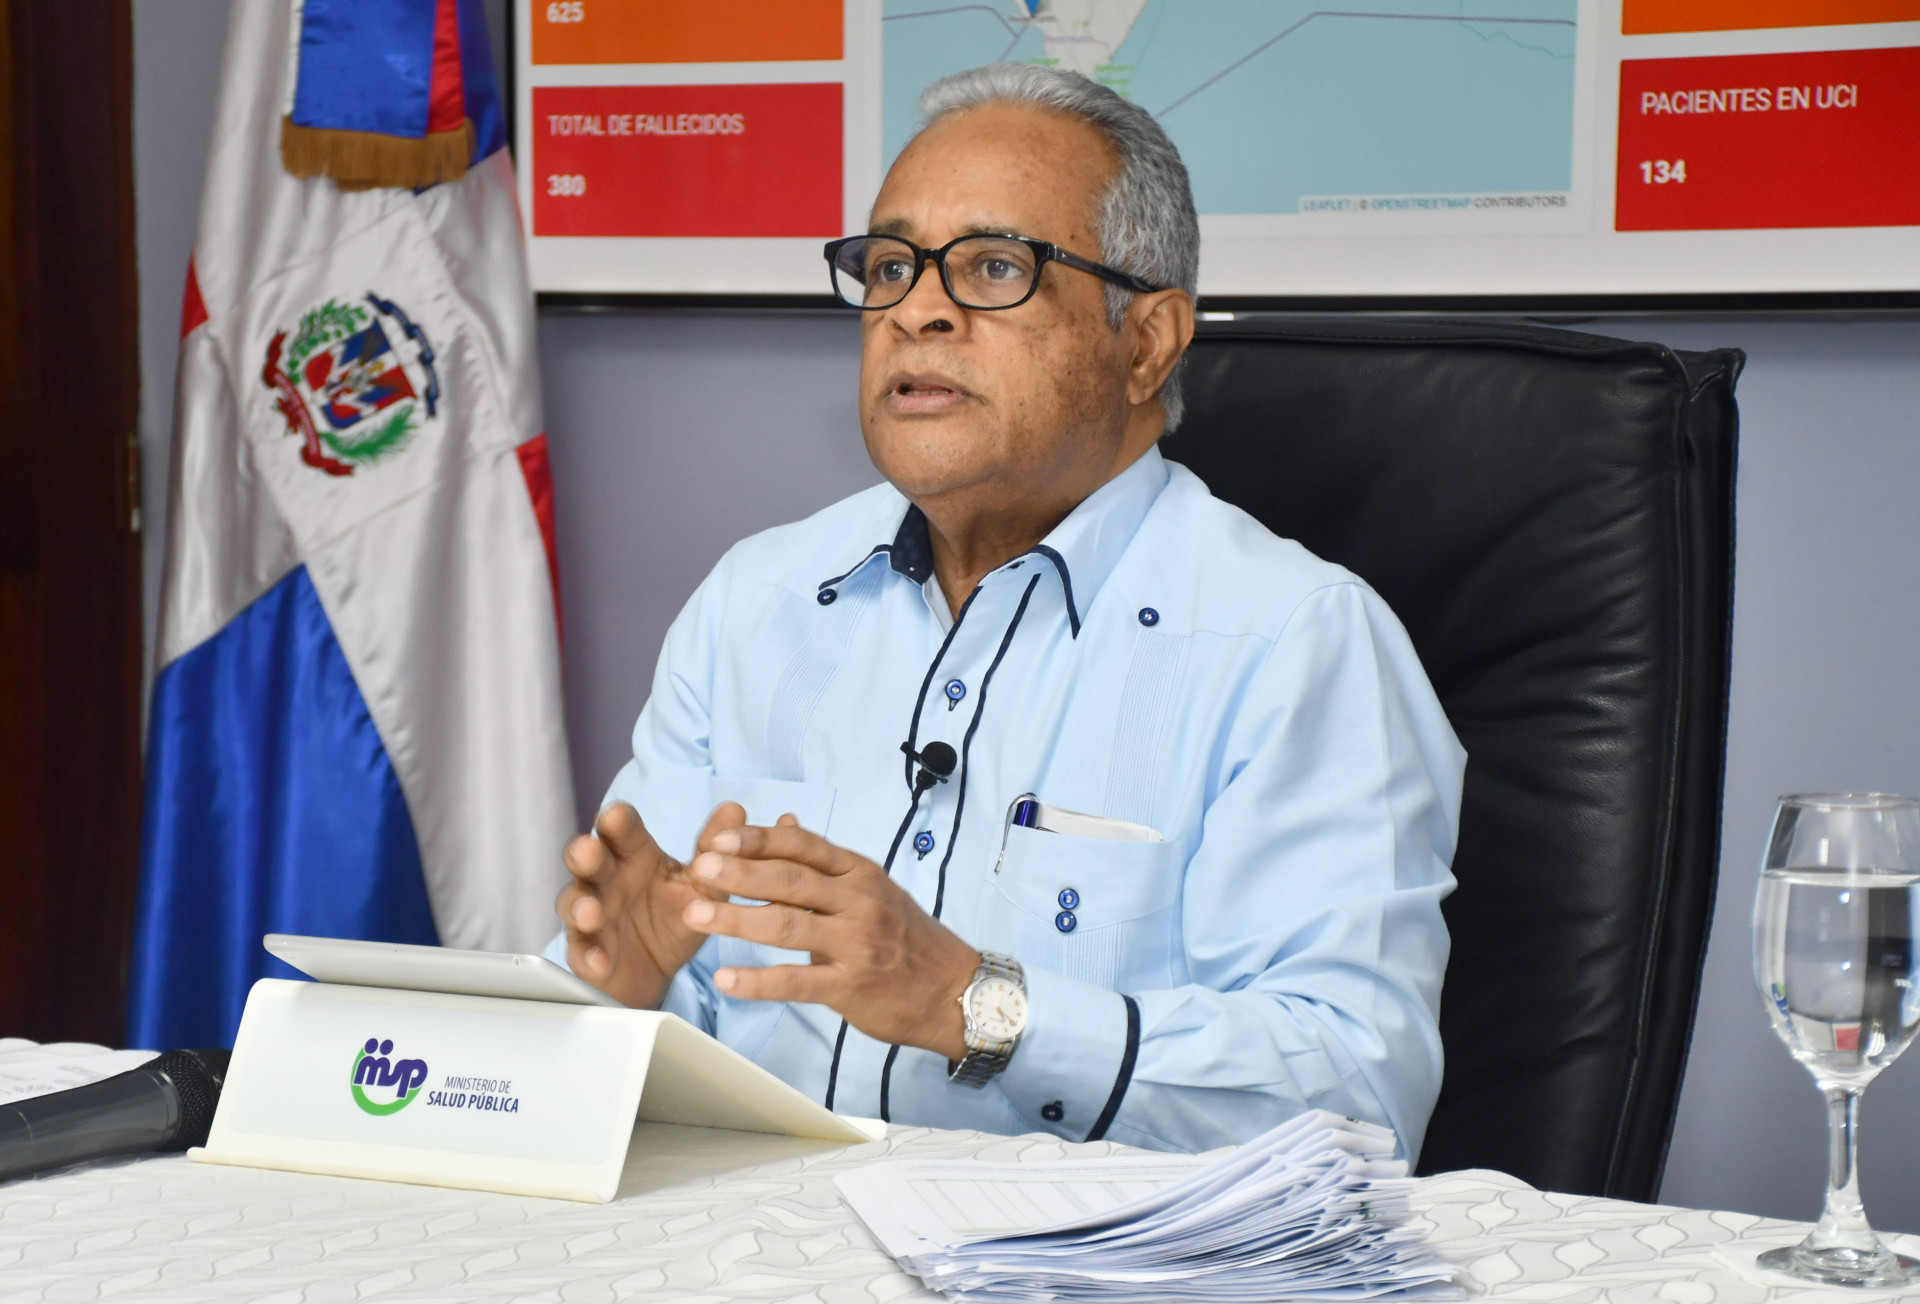 REPÚBLICA DOMINICANA: Más de dos mil personas recuperadas de COVID-19 en República Dominicana; tasa de letalidad desciende a 4.05 %